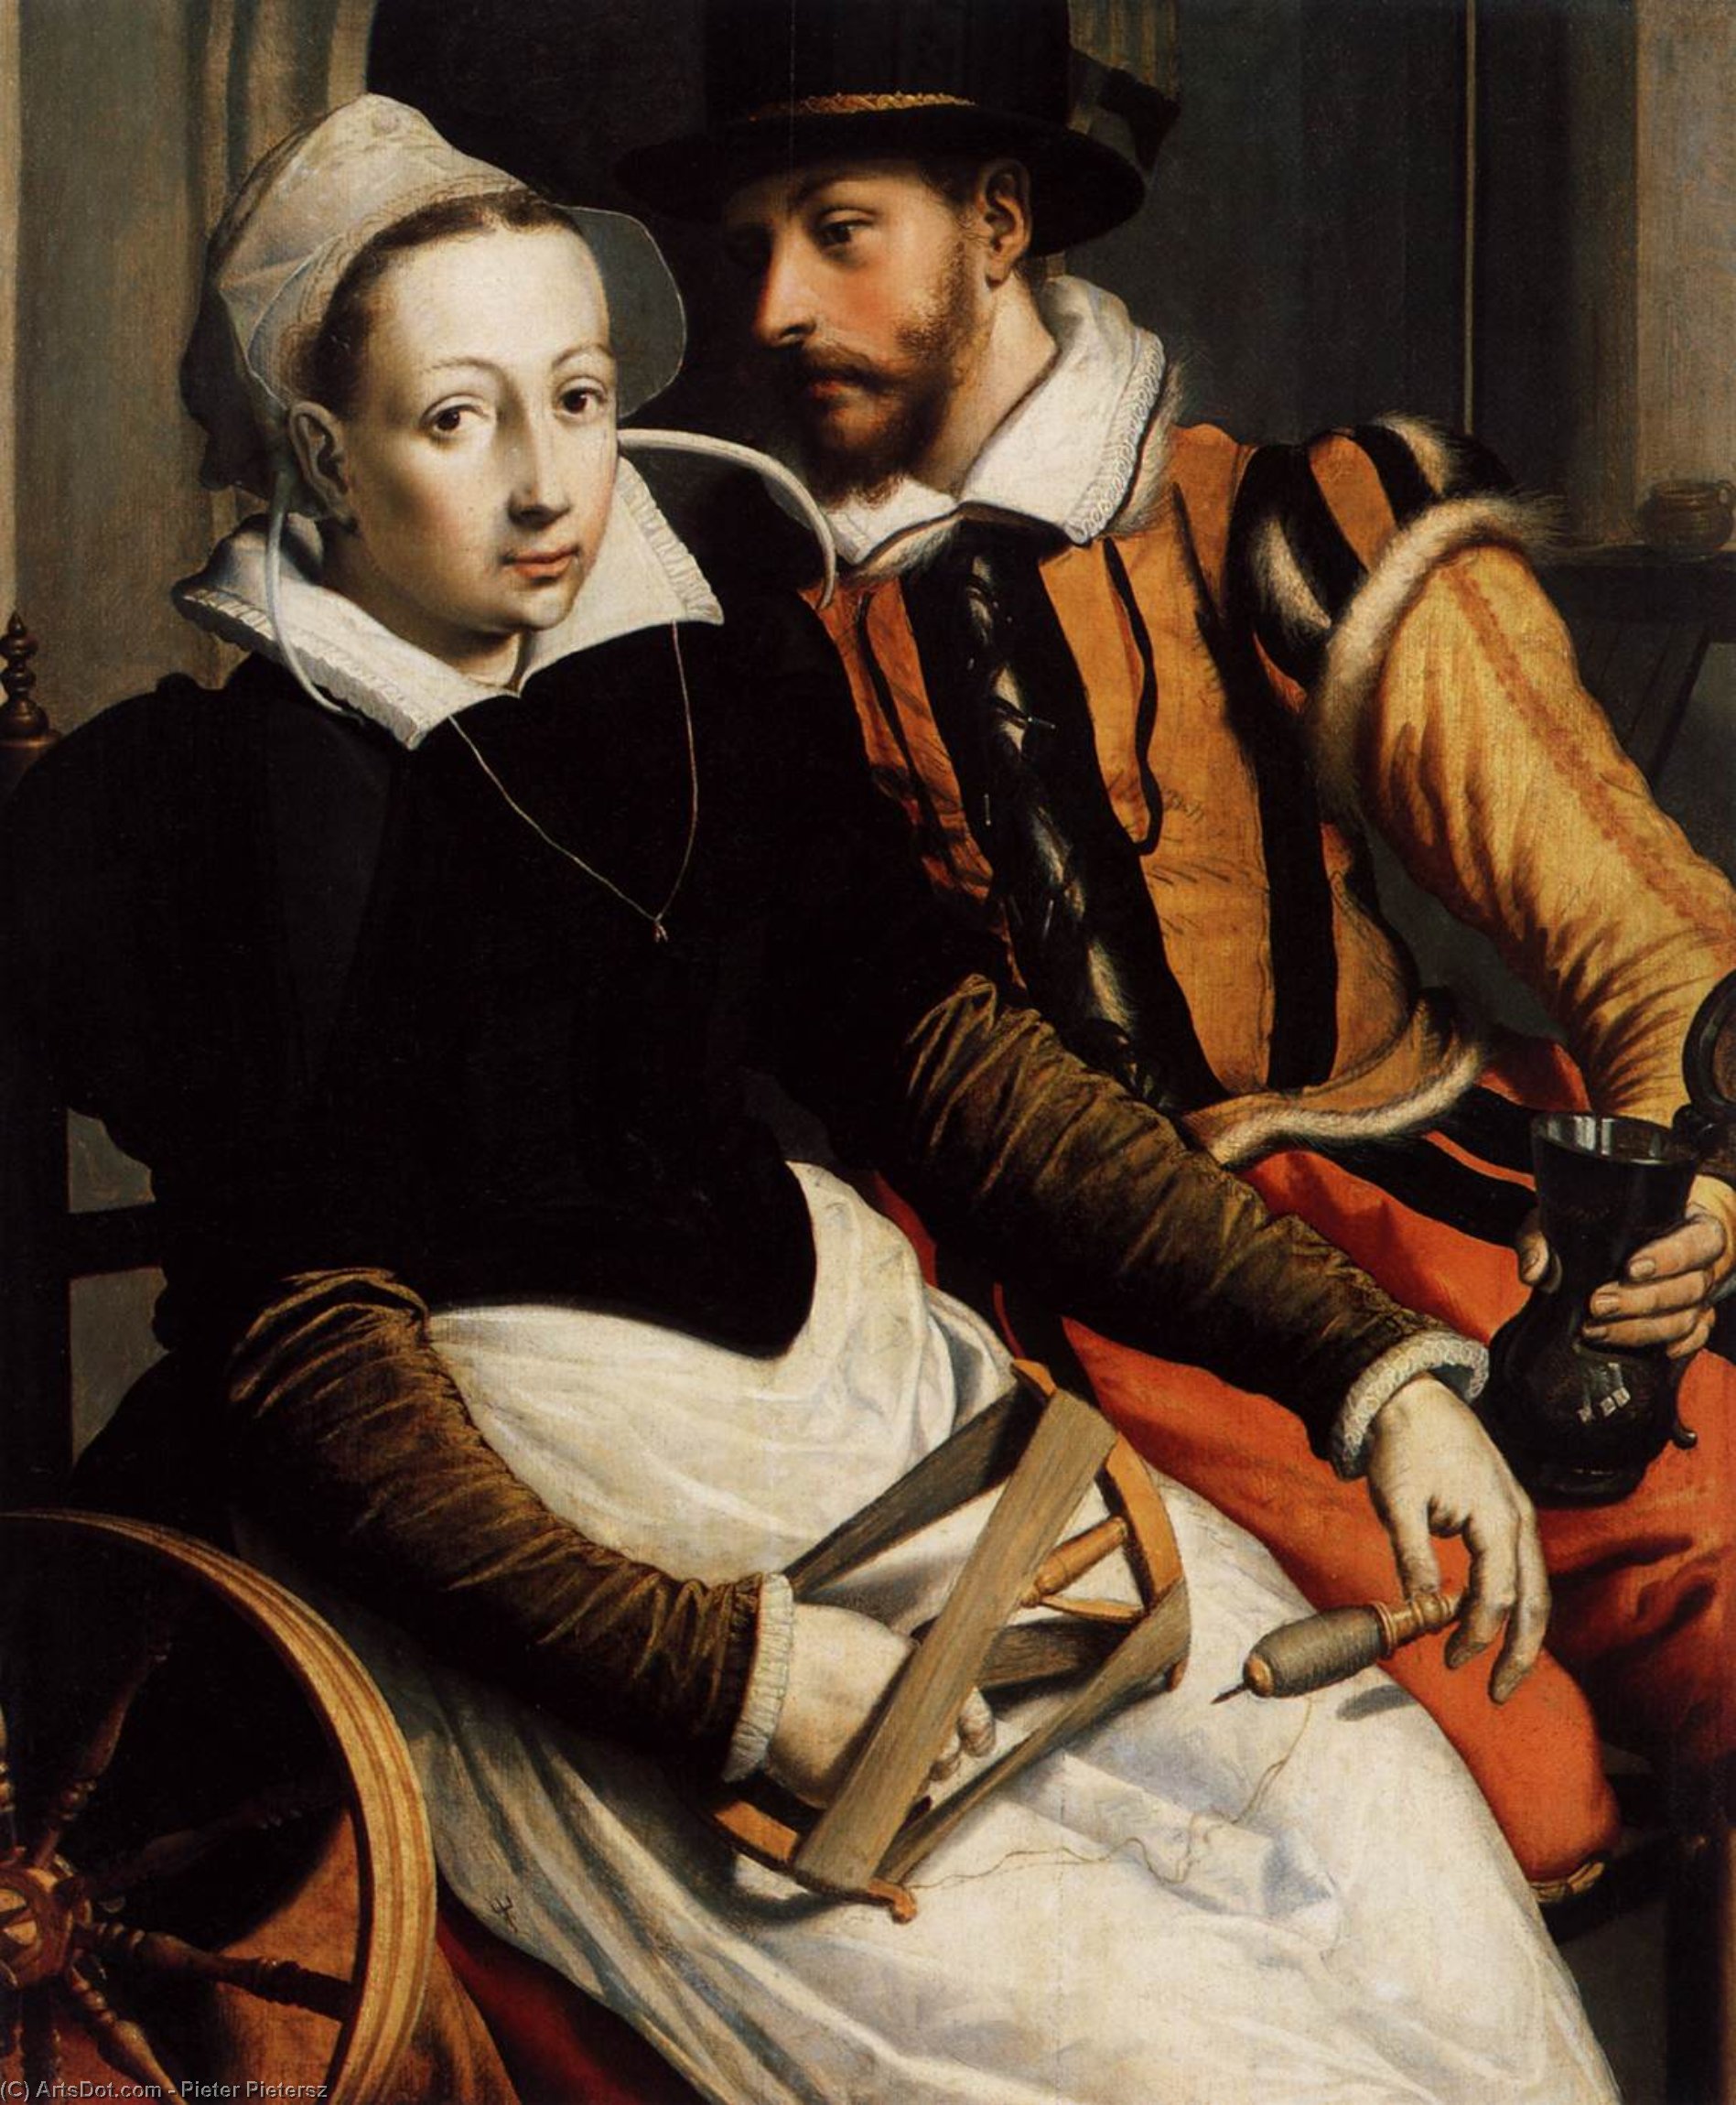 WikiOO.org - אנציקלופדיה לאמנויות יפות - ציור, יצירות אמנות Pieter Pietersz - Man and Woman by the Spinning Wheel